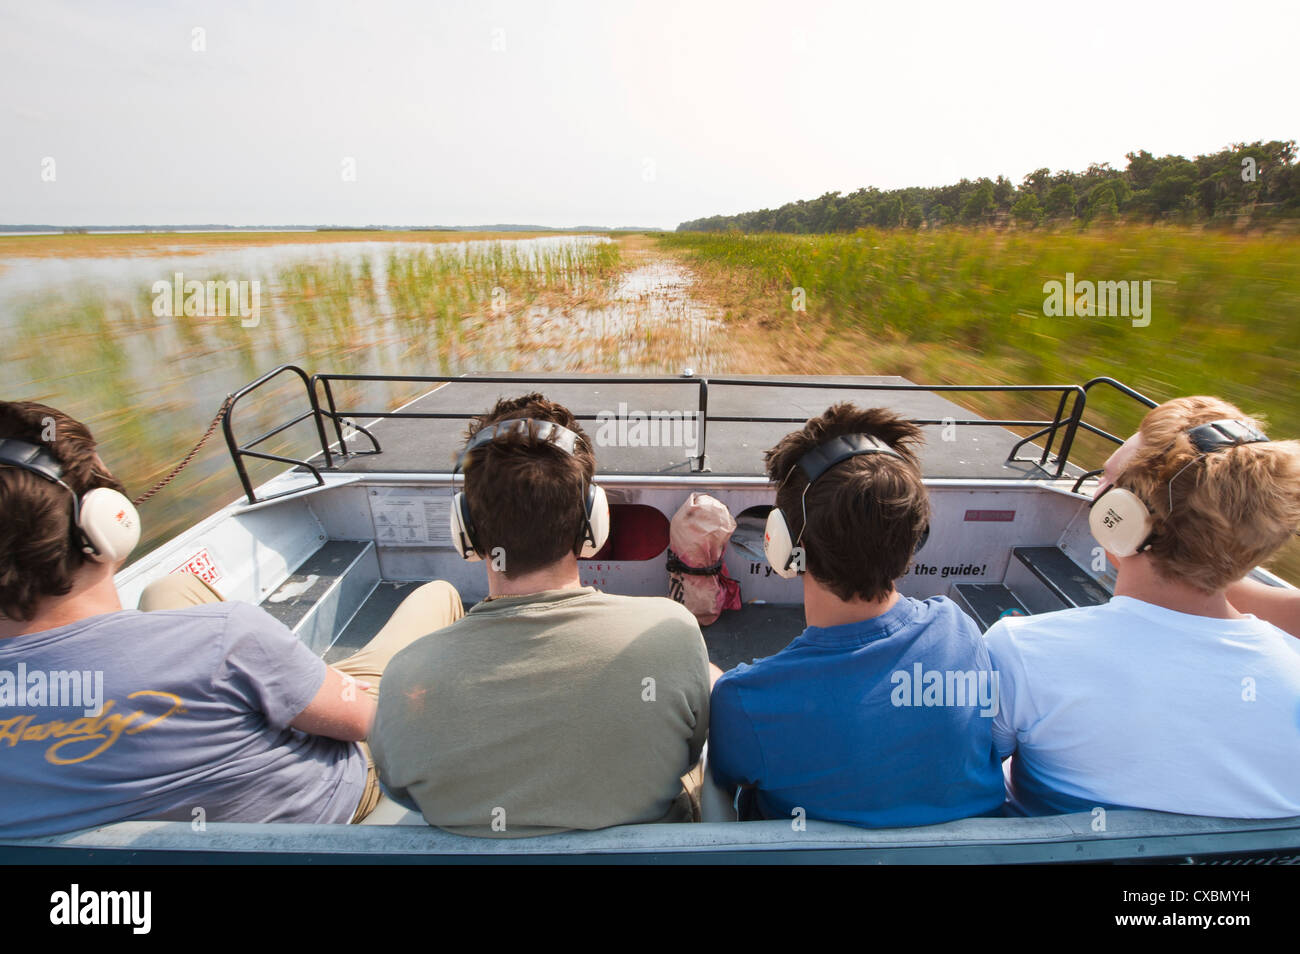 La navigation aérienne dans les Everglades, UNESCO World Heritage Site, Floride, États-Unis d'Amérique, Amérique du Nord Banque D'Images